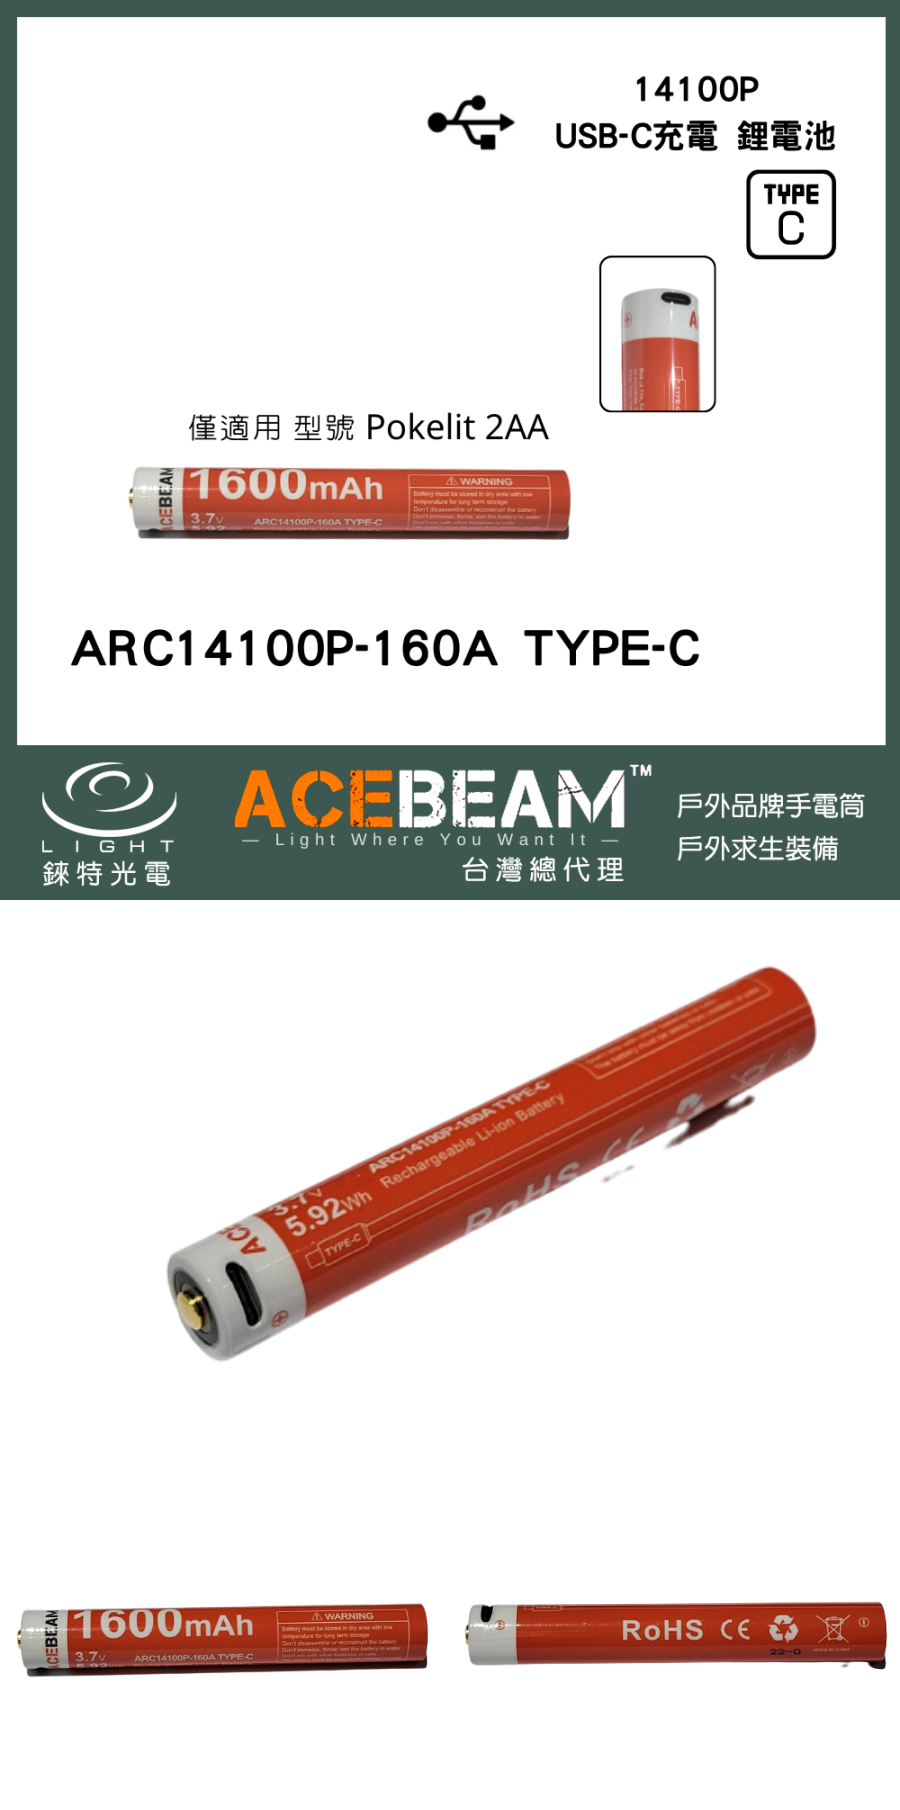 1【錸特光電】ACEBEAM ARC14100P-160A TYPE-C 鋰電池 電壓3.7V Pokelit 2AA手電筒 專用充電電池